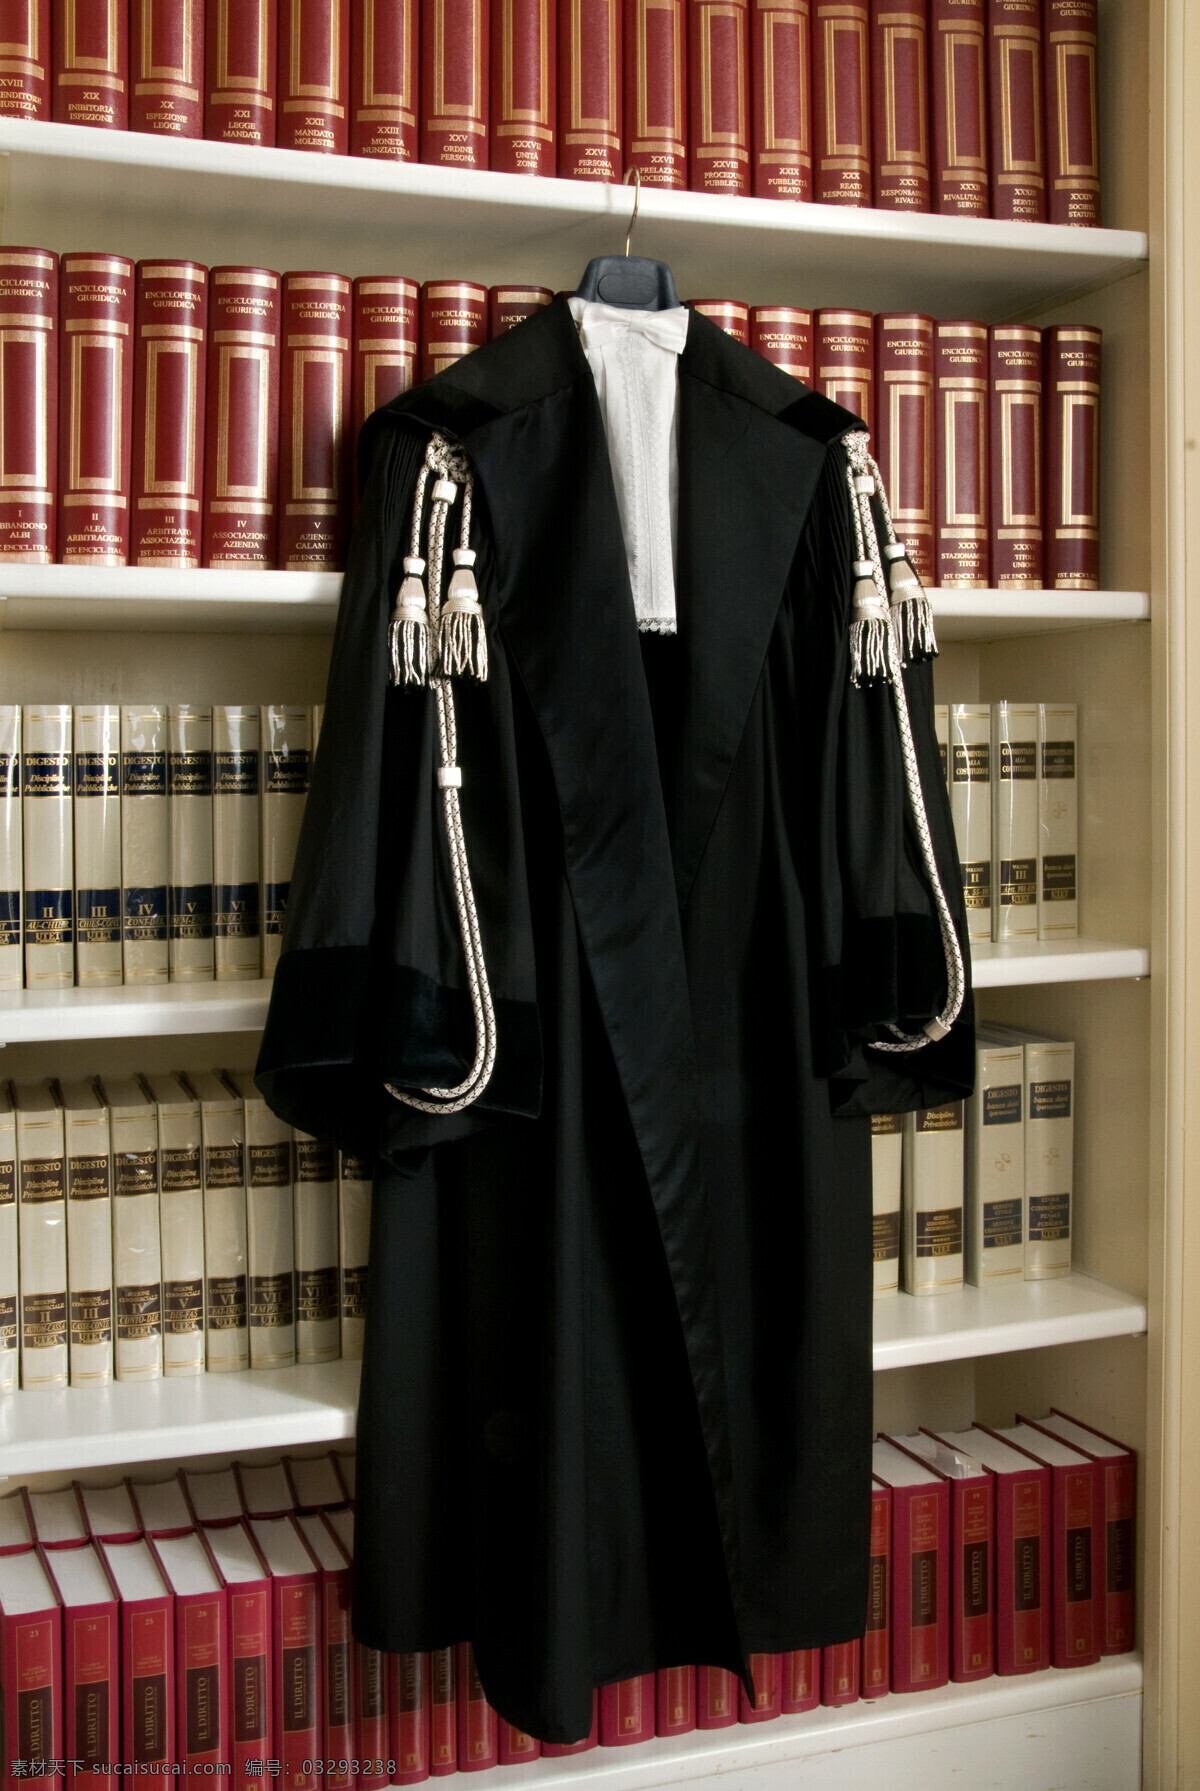 法官 衣服 书 服装 职业装 法律书 其他类别 生活百科 黑色